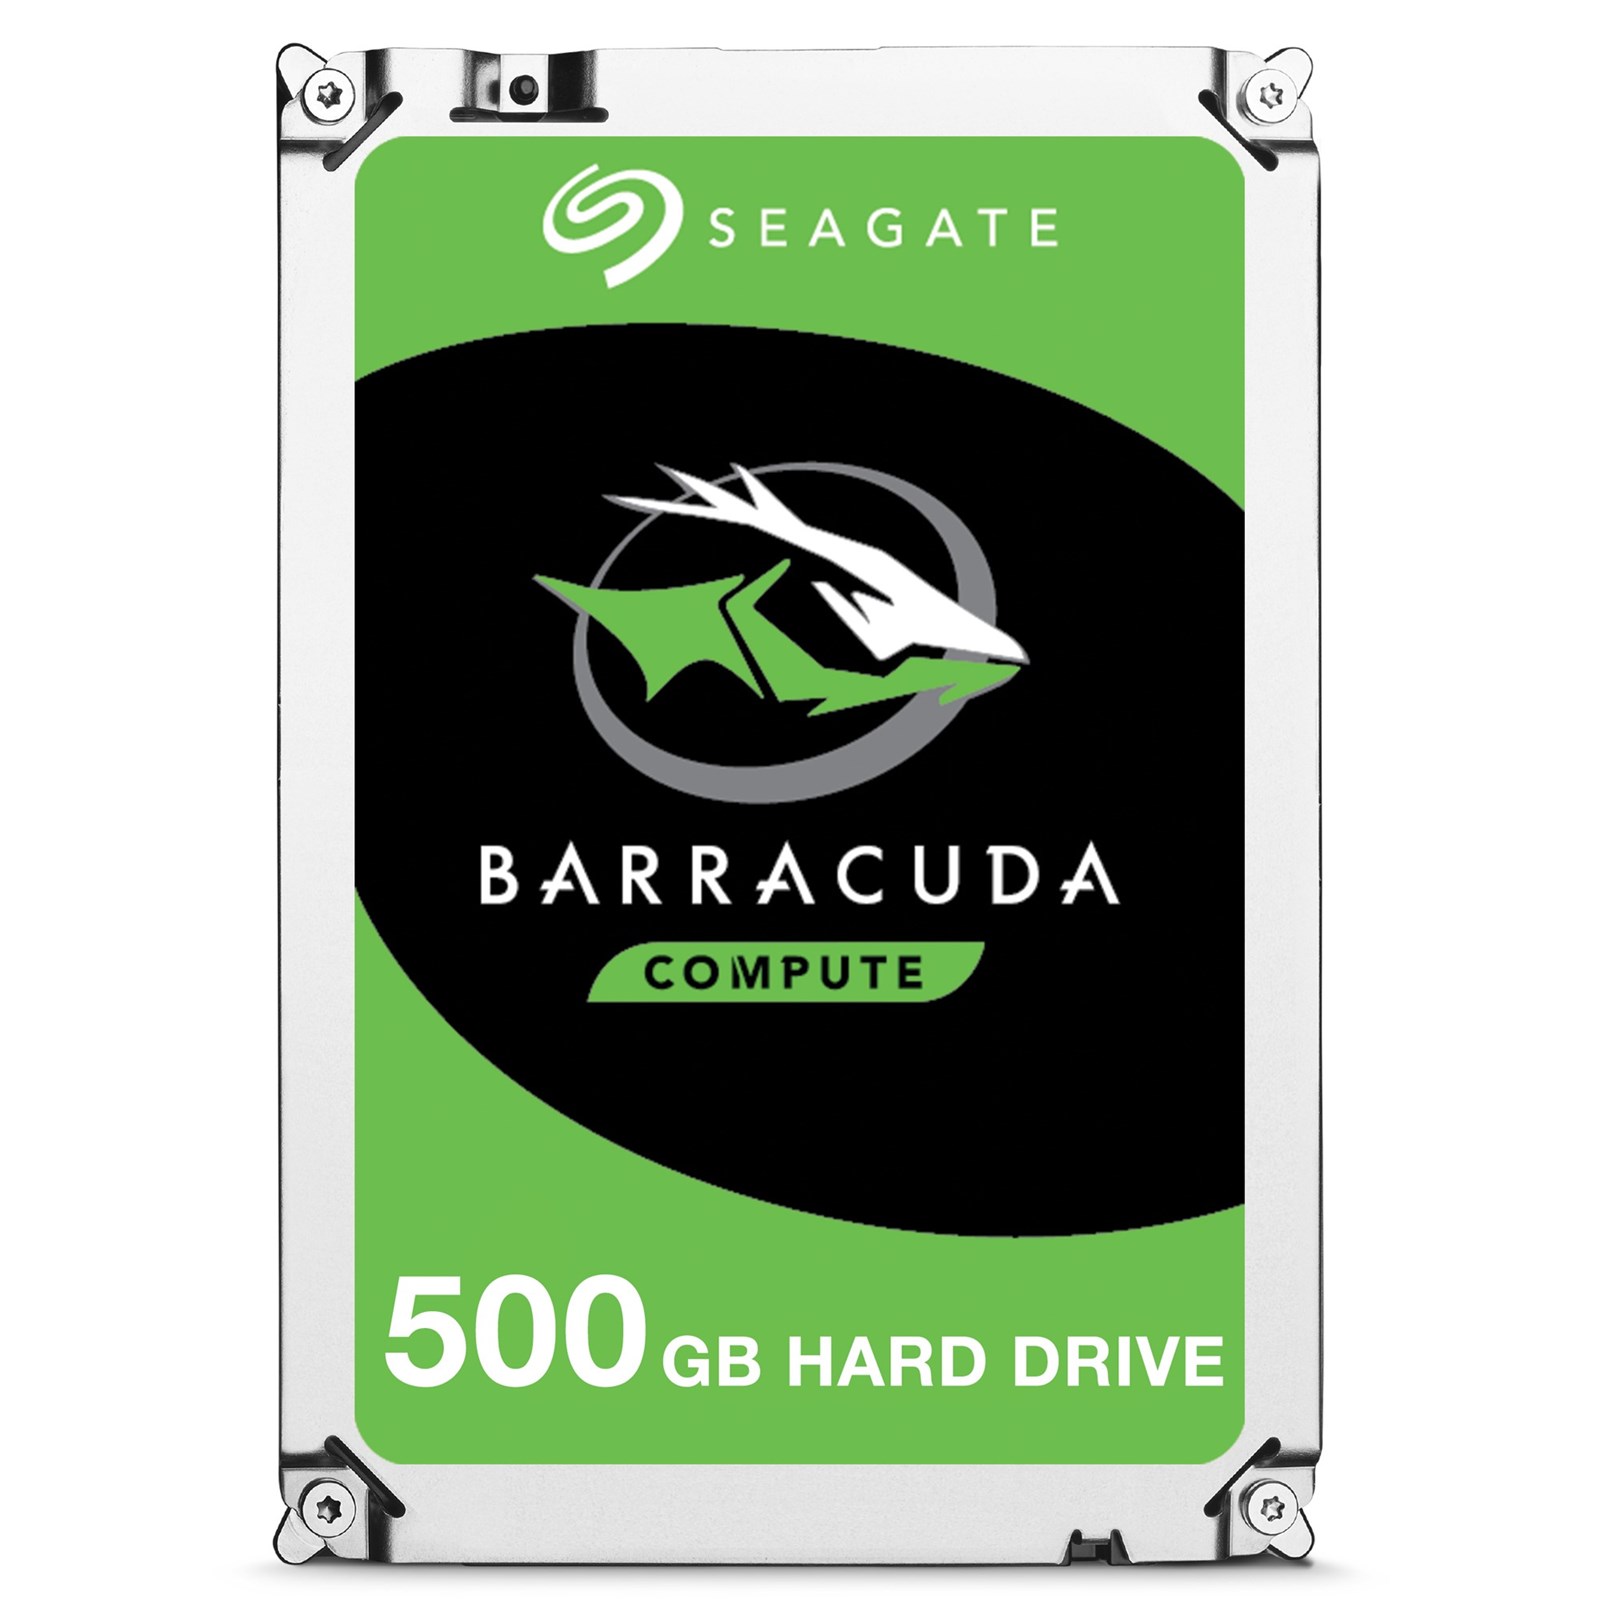 SEAGATE BARRACUDA 500GB 7200RPM 32MB SATA3 6Gbit/sn ST500DM009 HDD